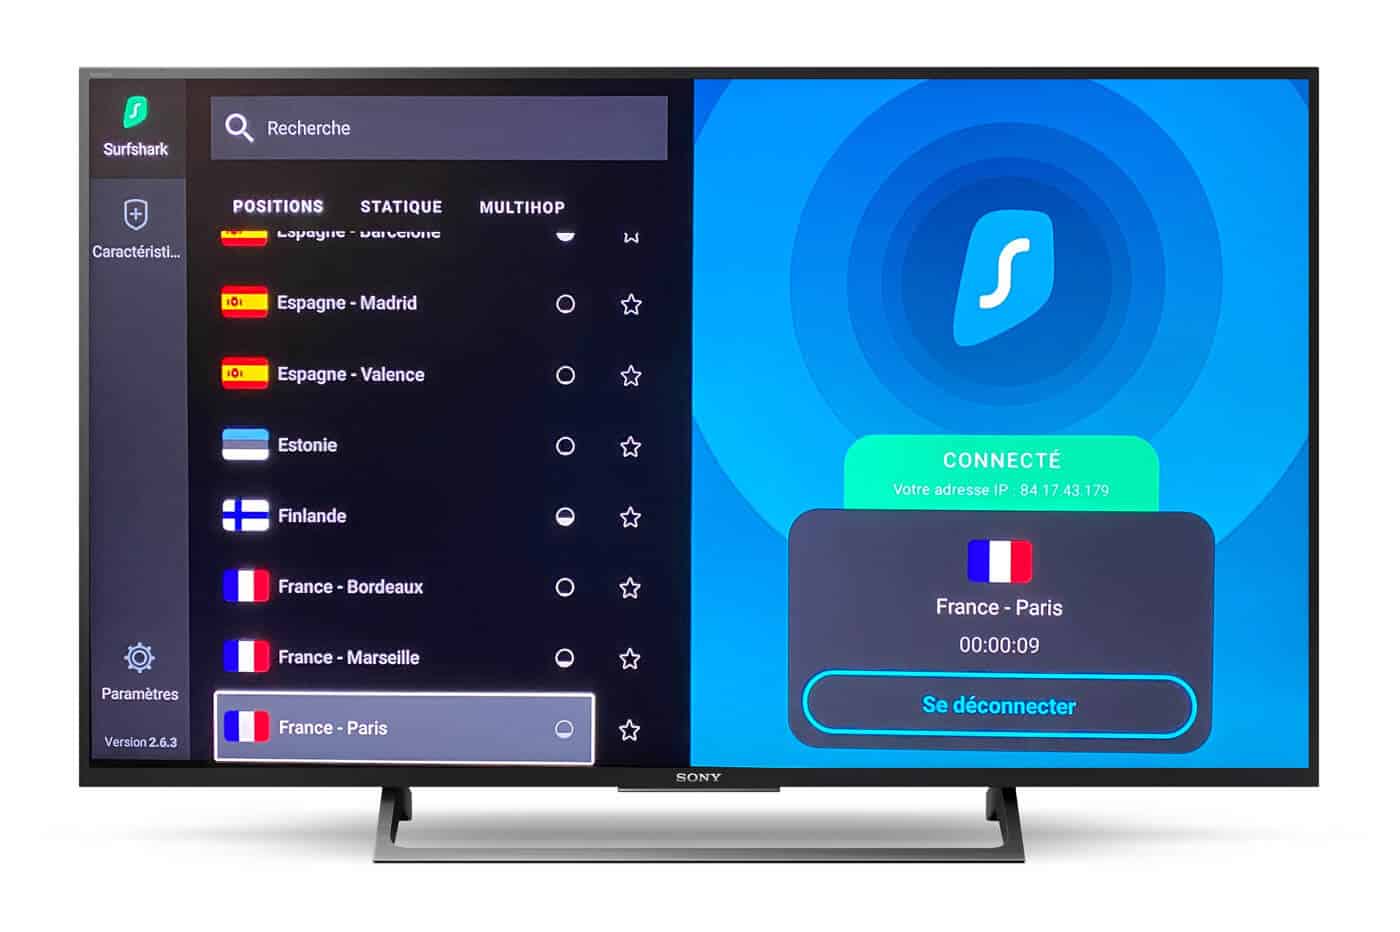 Surfshark-Smart-TV